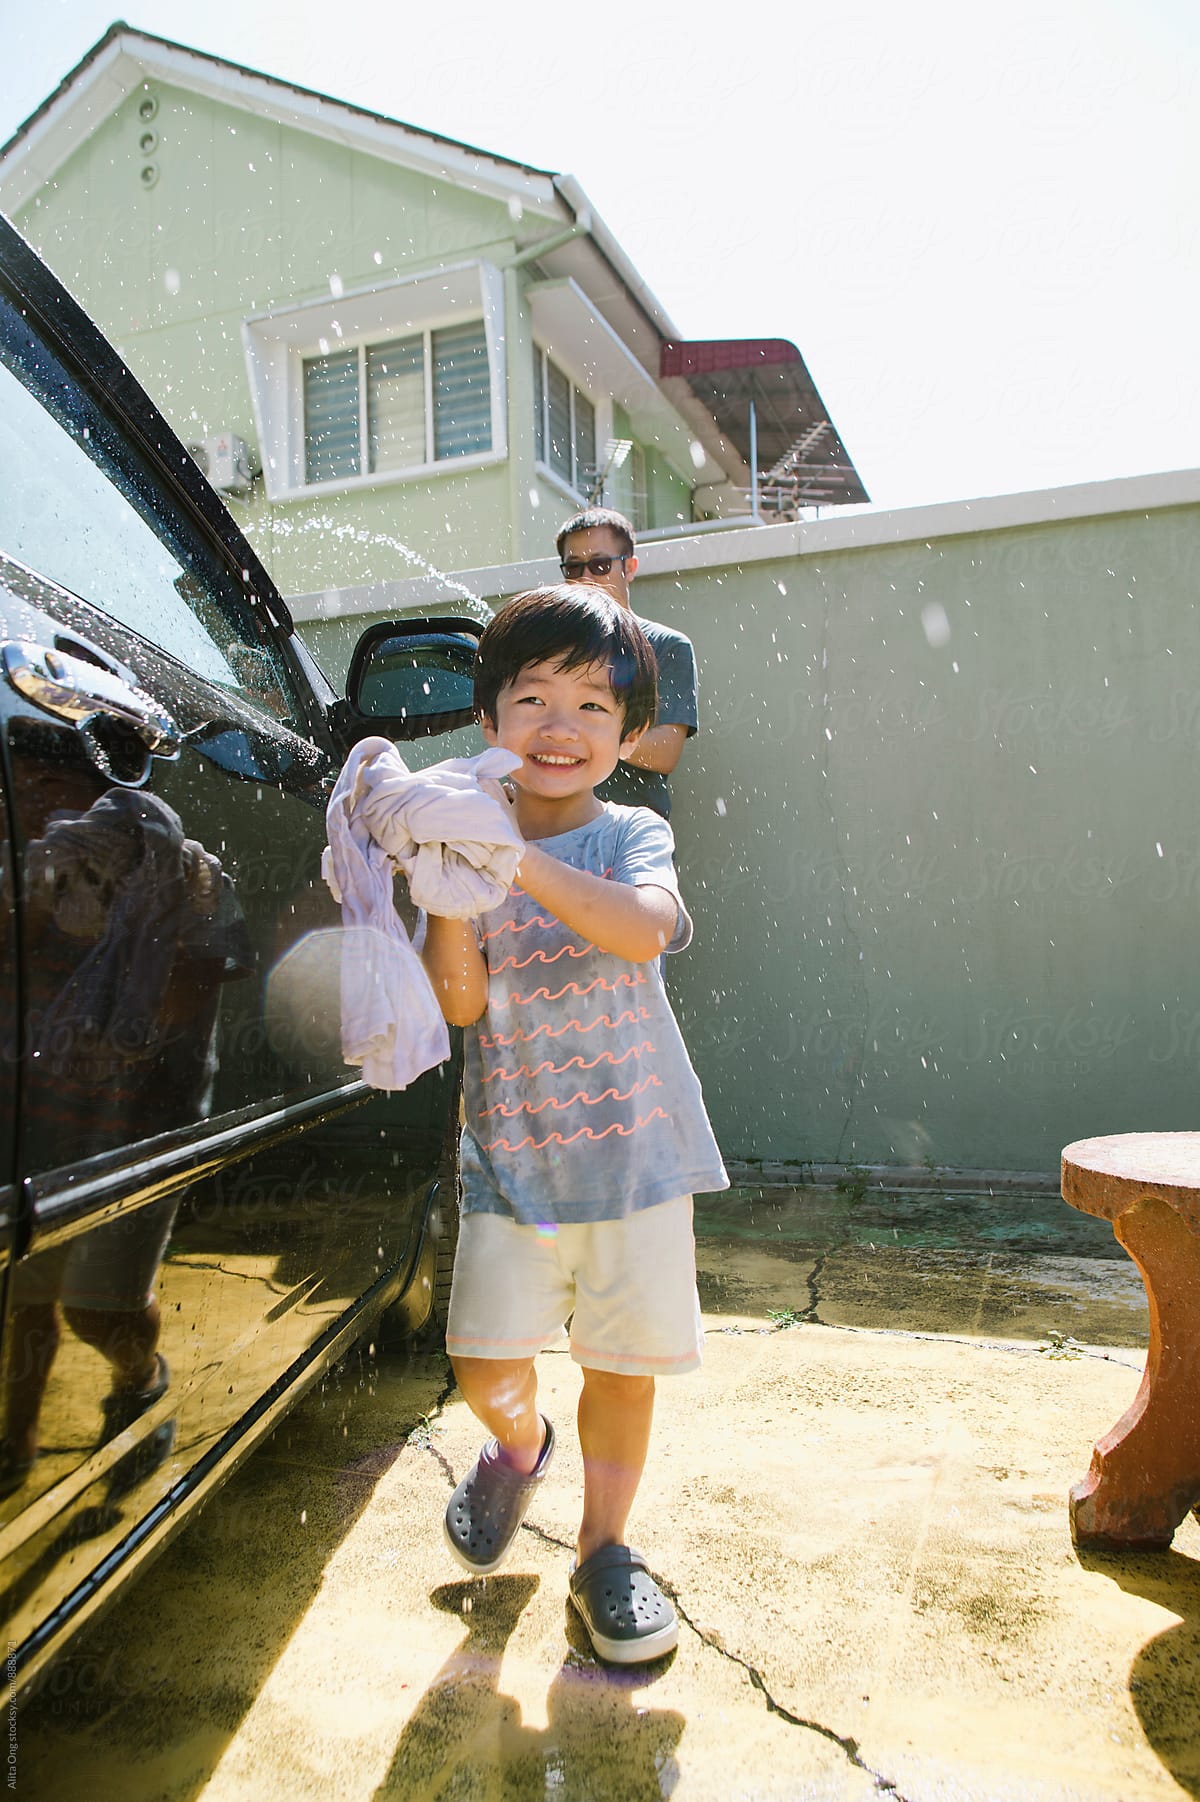 Little boy helping dad washing car